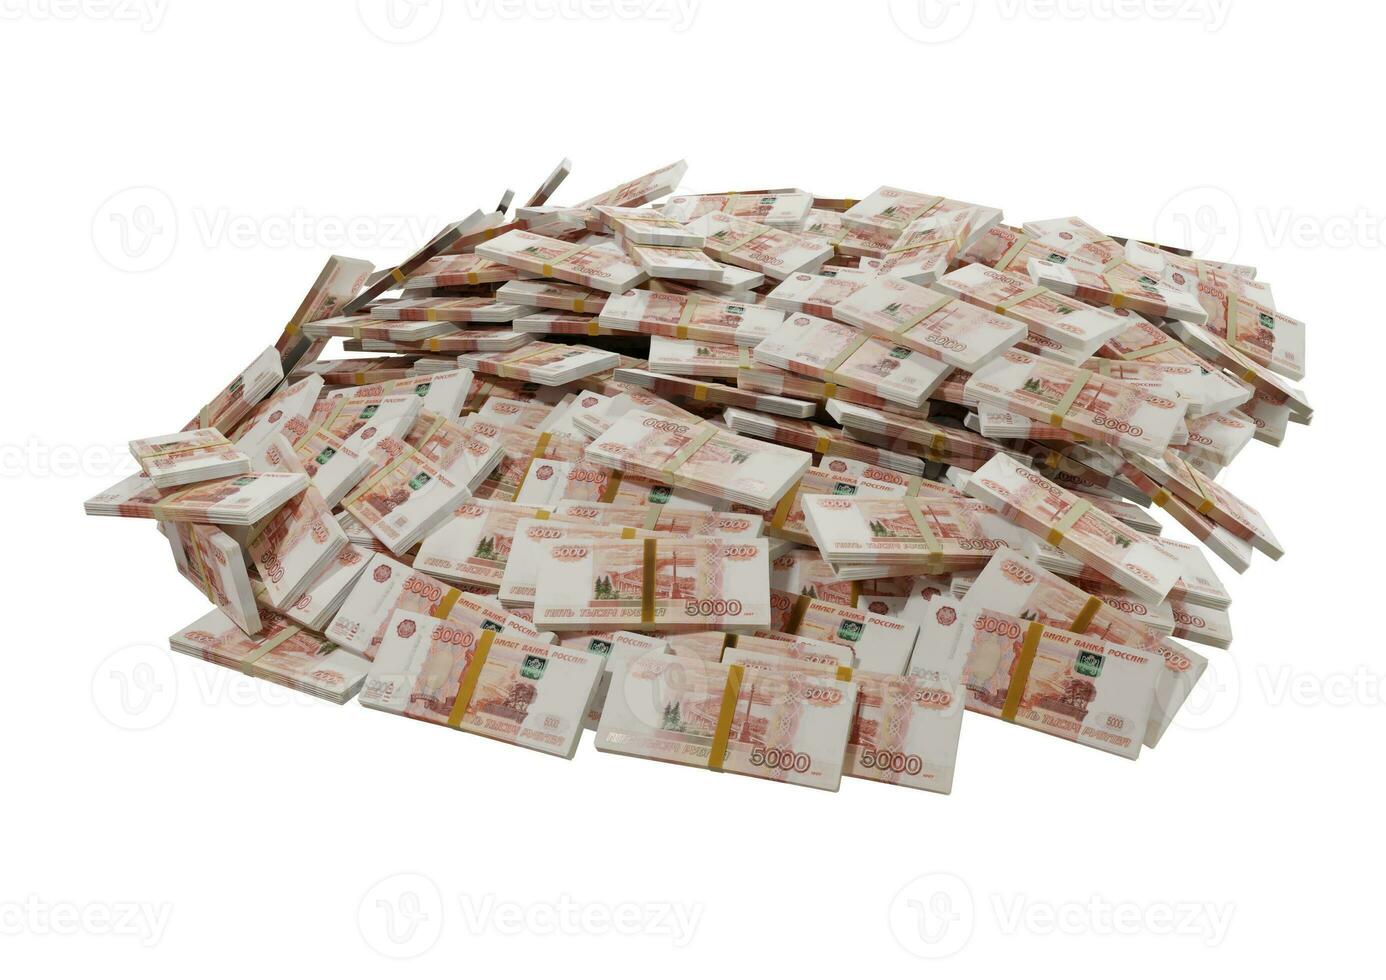 empilhar dinheiro russo ou notas de rublos da rússia espalhados em um fundo branco isolado o conceito de economia, finanças, plano de fundo, notícias, mídias sociais e textura de dinheiro renderização em 3d foto